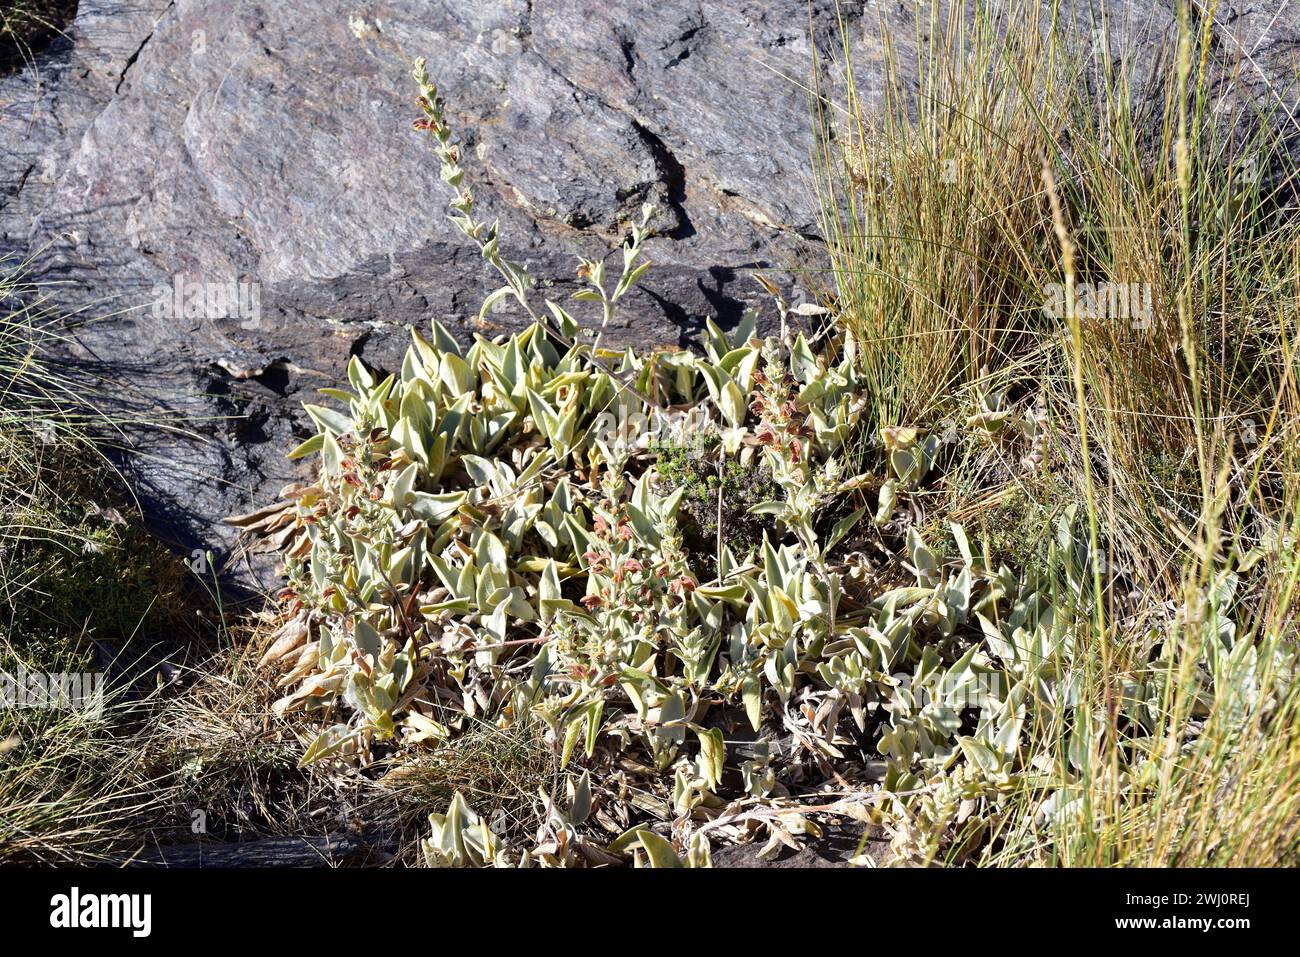 Barbas de pastor (Phlomis crinita malacitana) is a perennial herb endemic to southern Spain mountains. This photo was taken in Las Alpujarras, Sierra Stock Photo